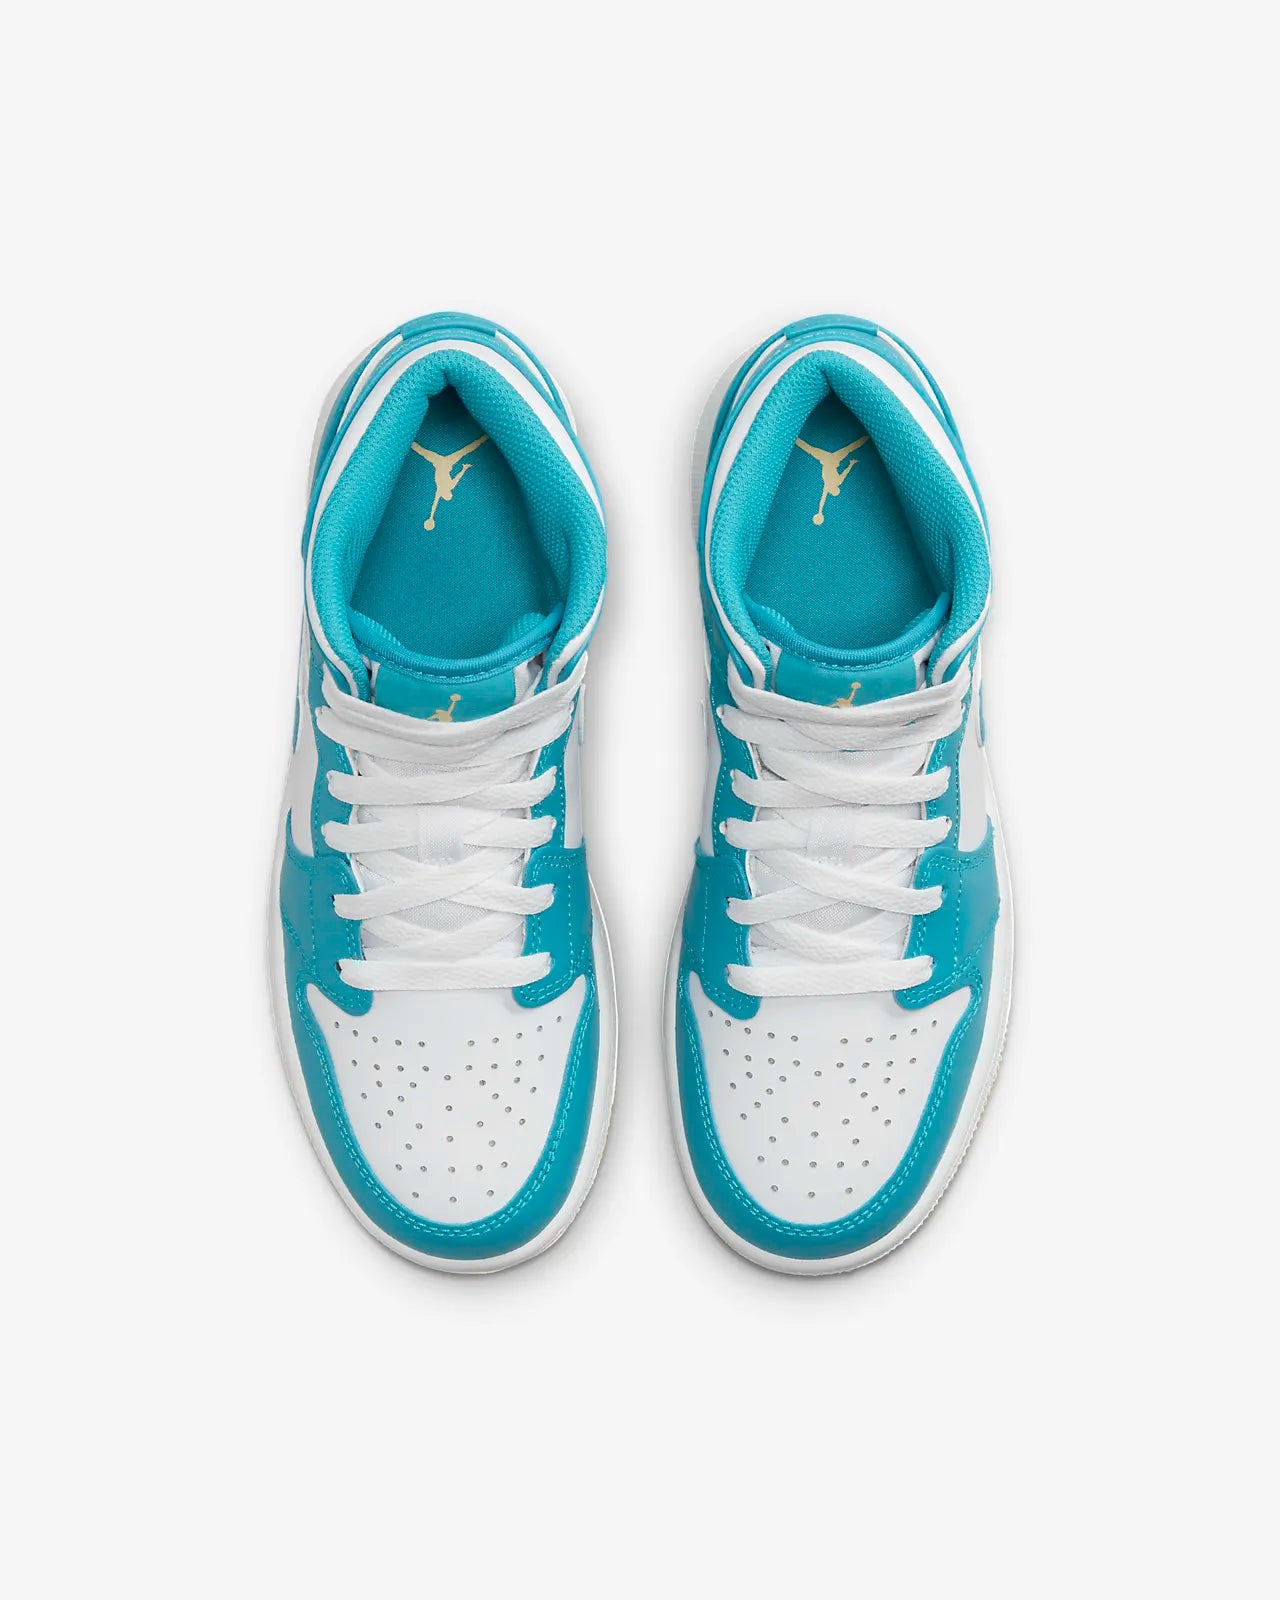 Nike - Air Jordan 1 MID - Aquatone